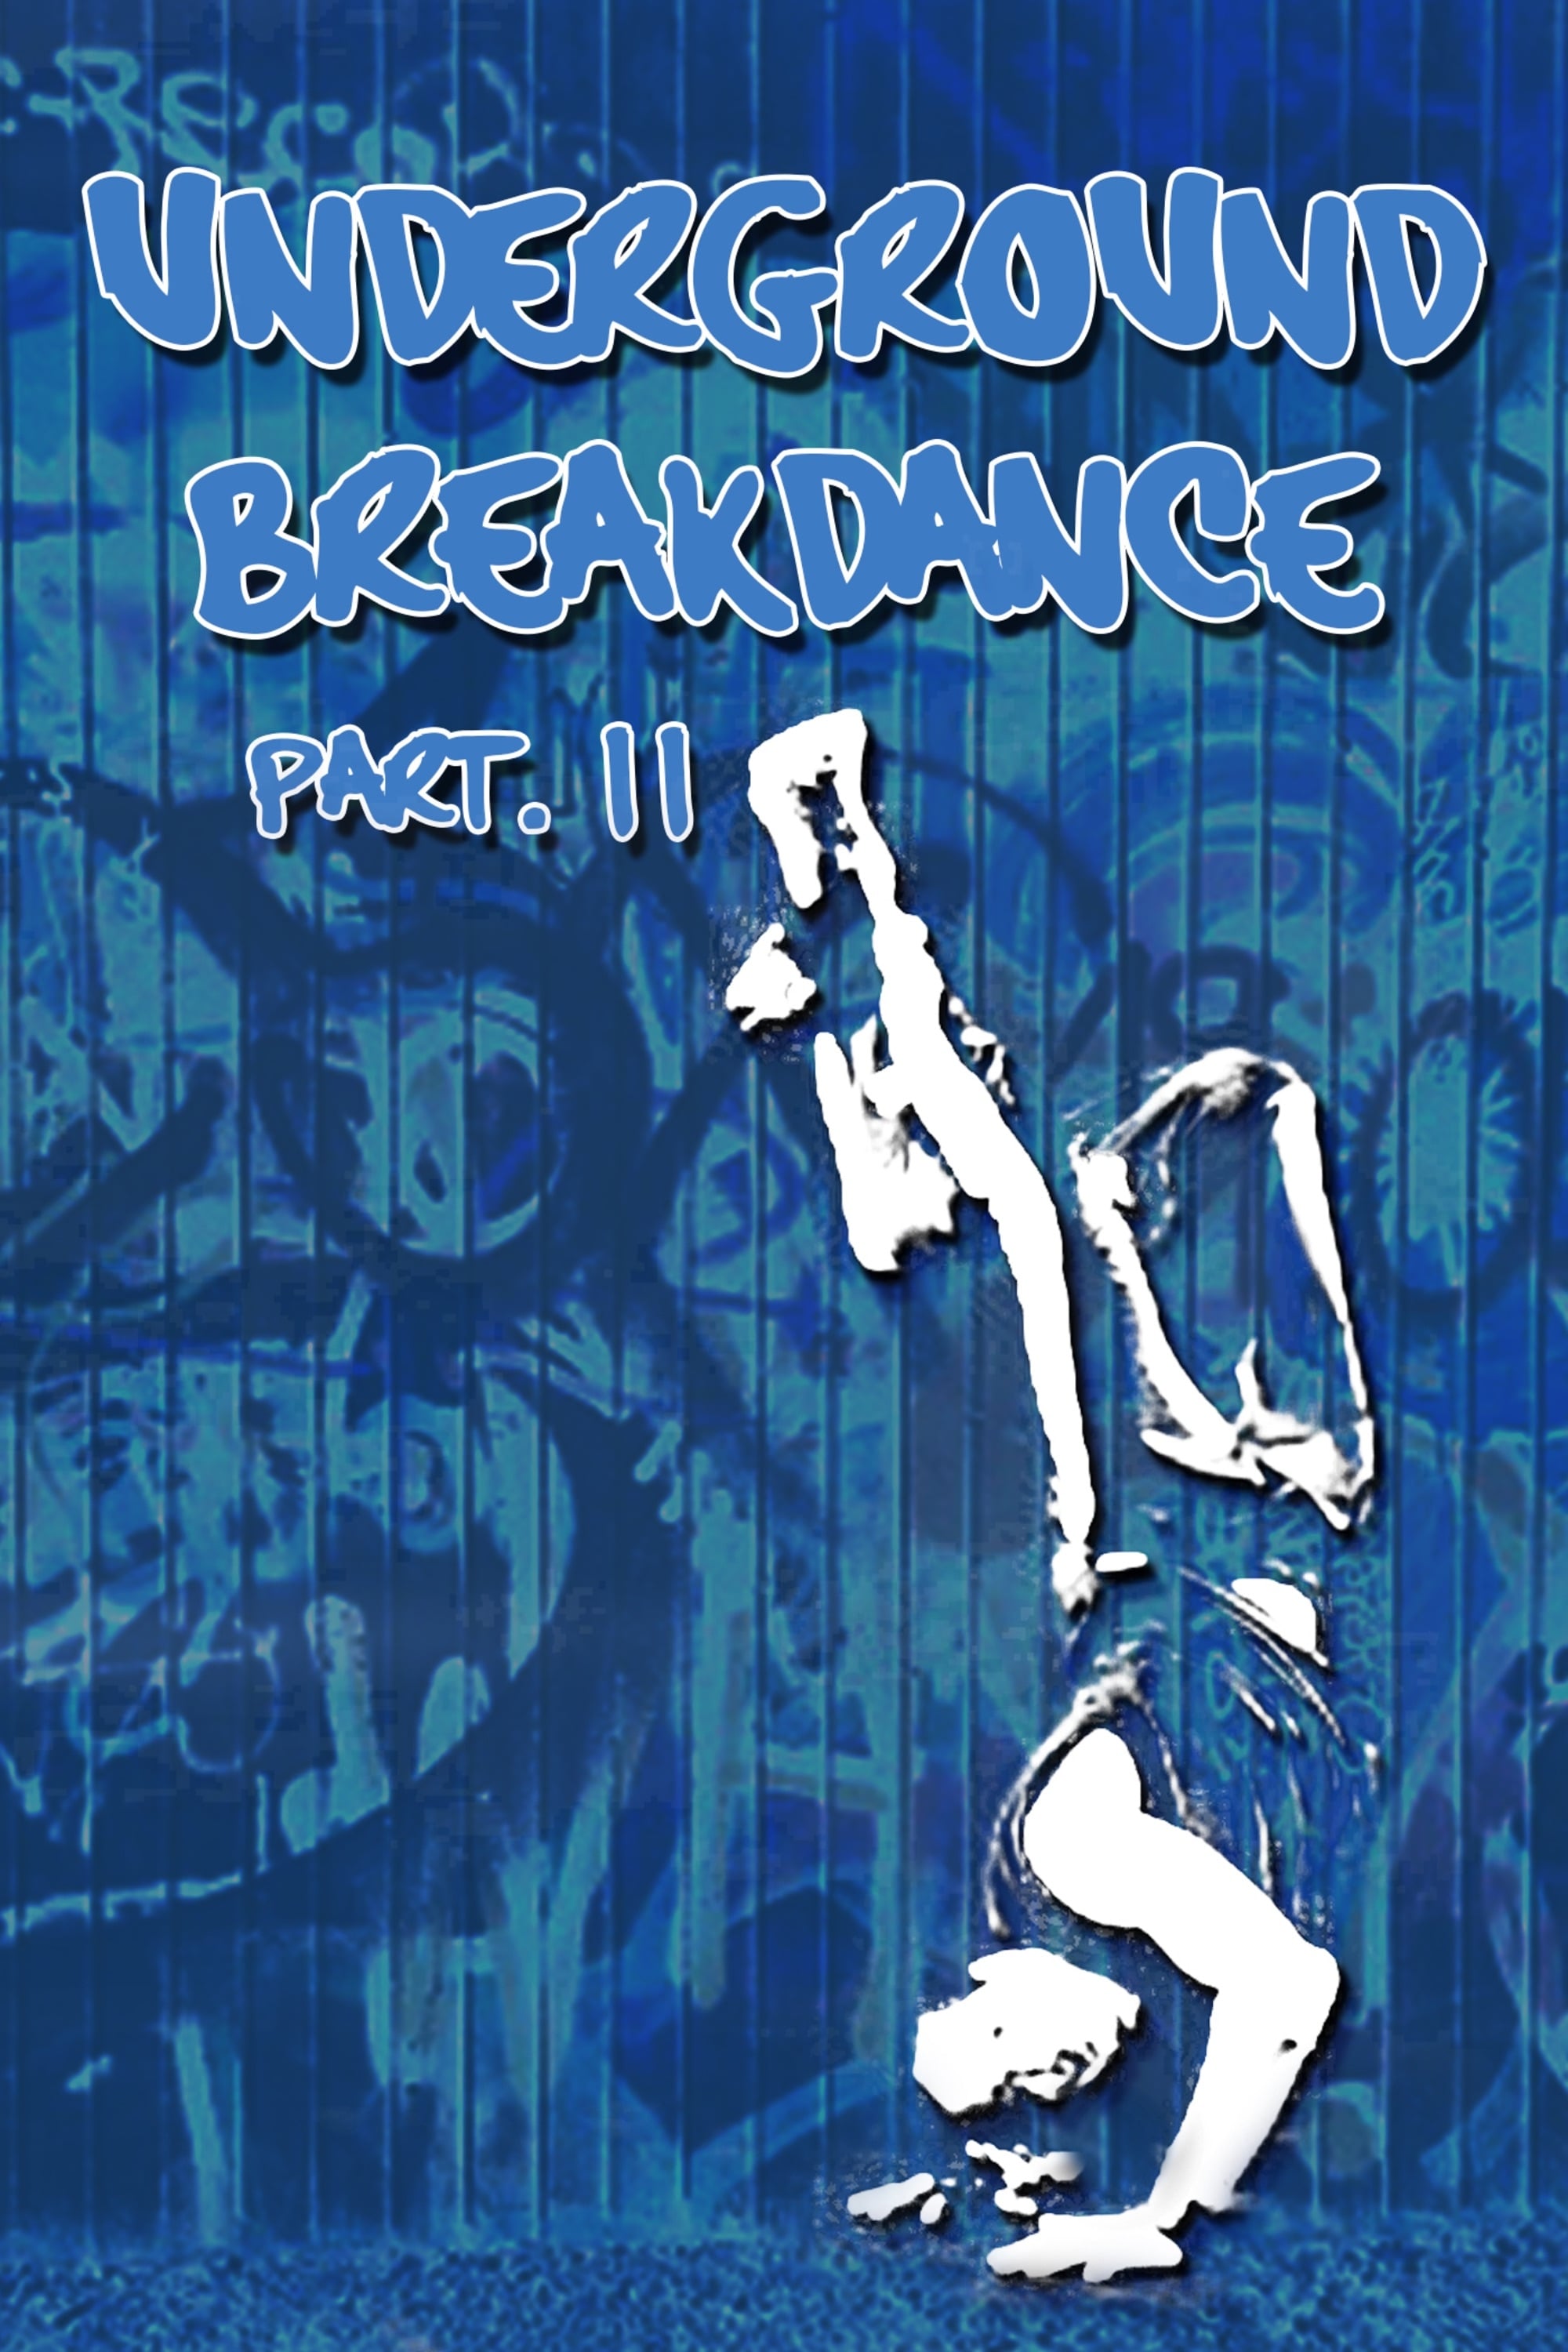 Underground Breakdance: Part 2